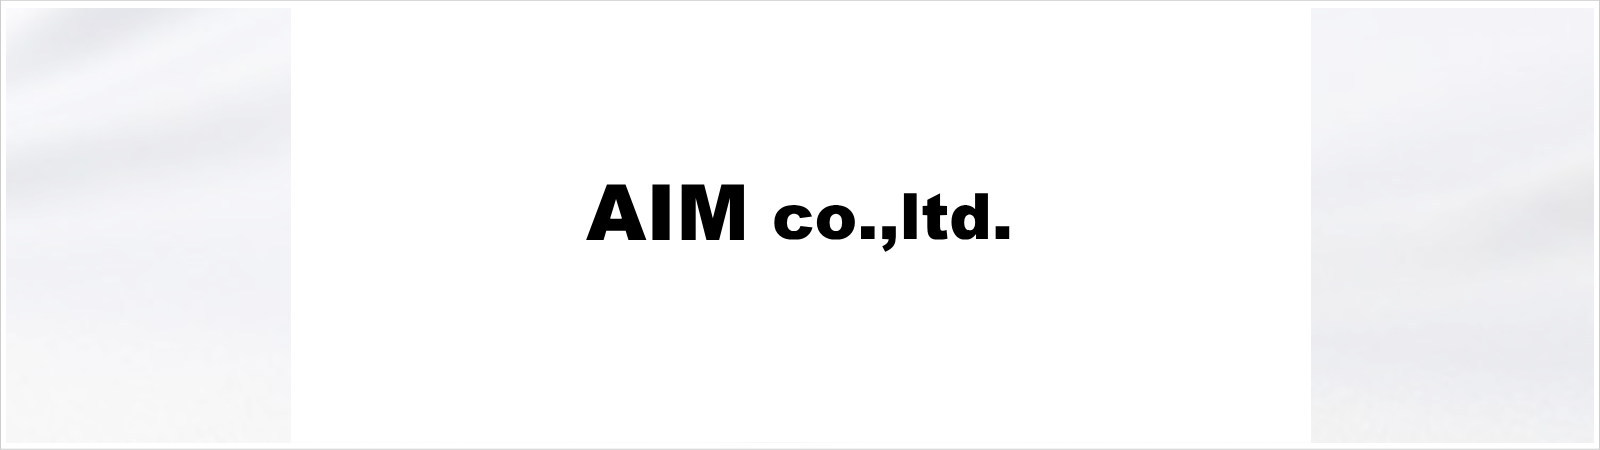 有限会社AIM(アイム)|愛知県岡崎市を拠点にファッションブランド商品の販売及び通信販売をしています。